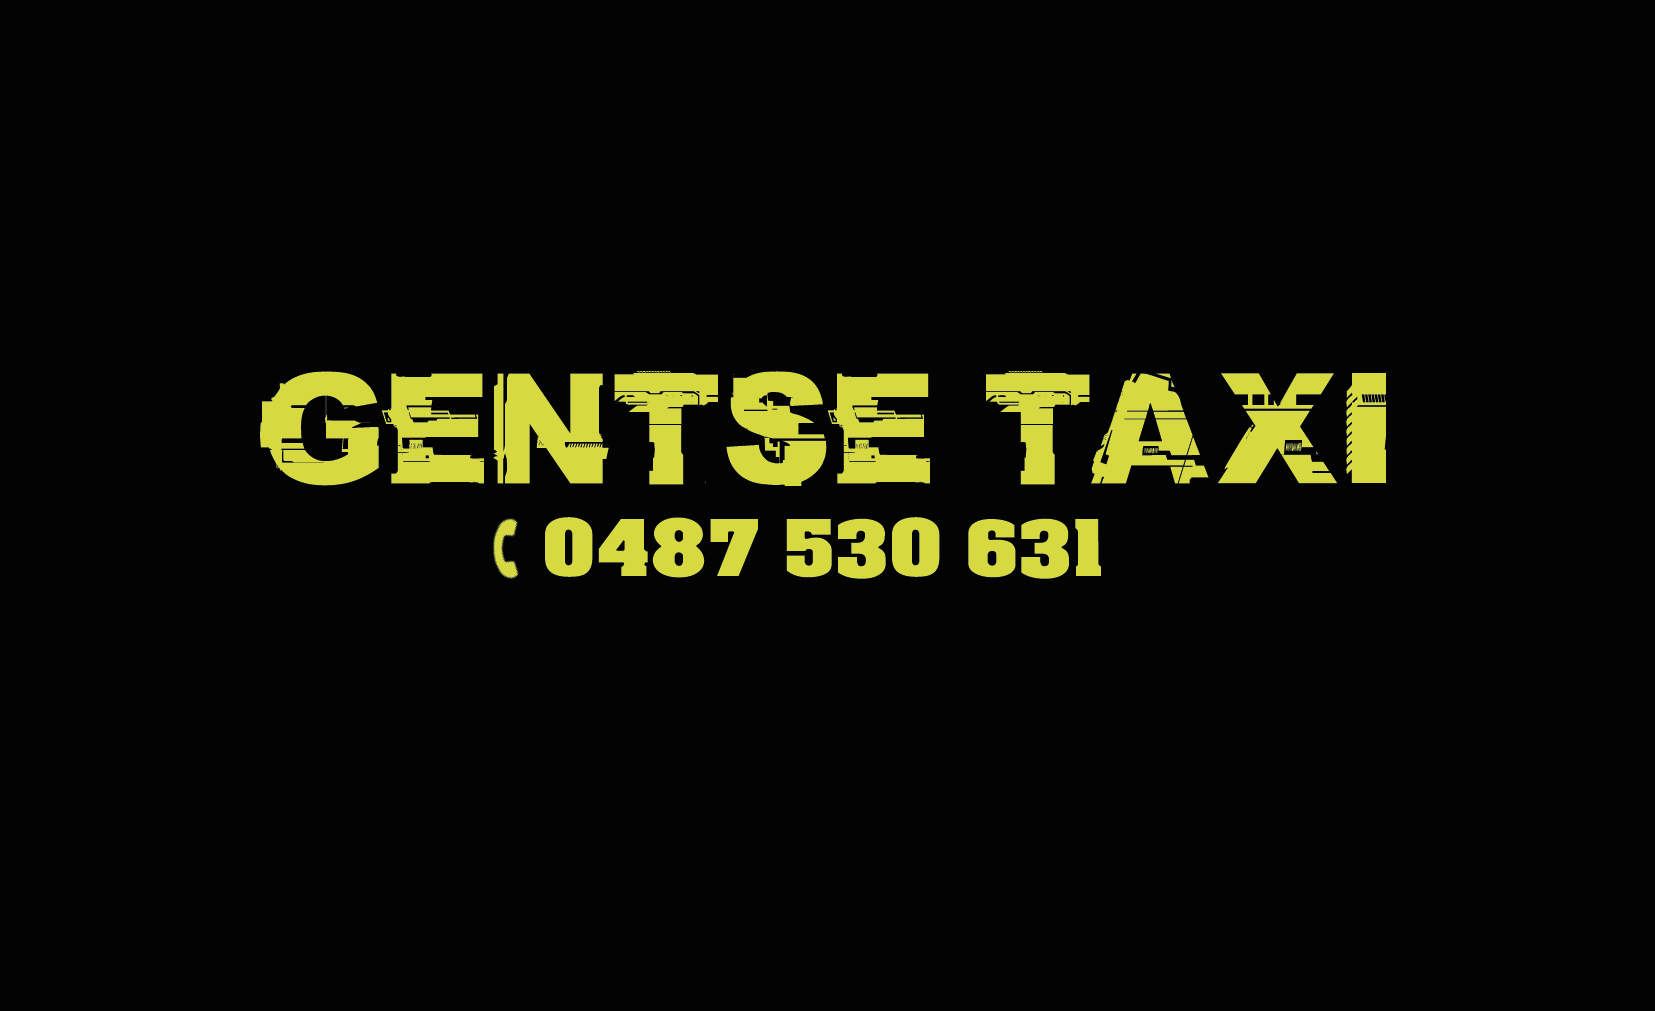 taxibedrijven met luchthavenvervoer Borsbeke Gentse Taxi